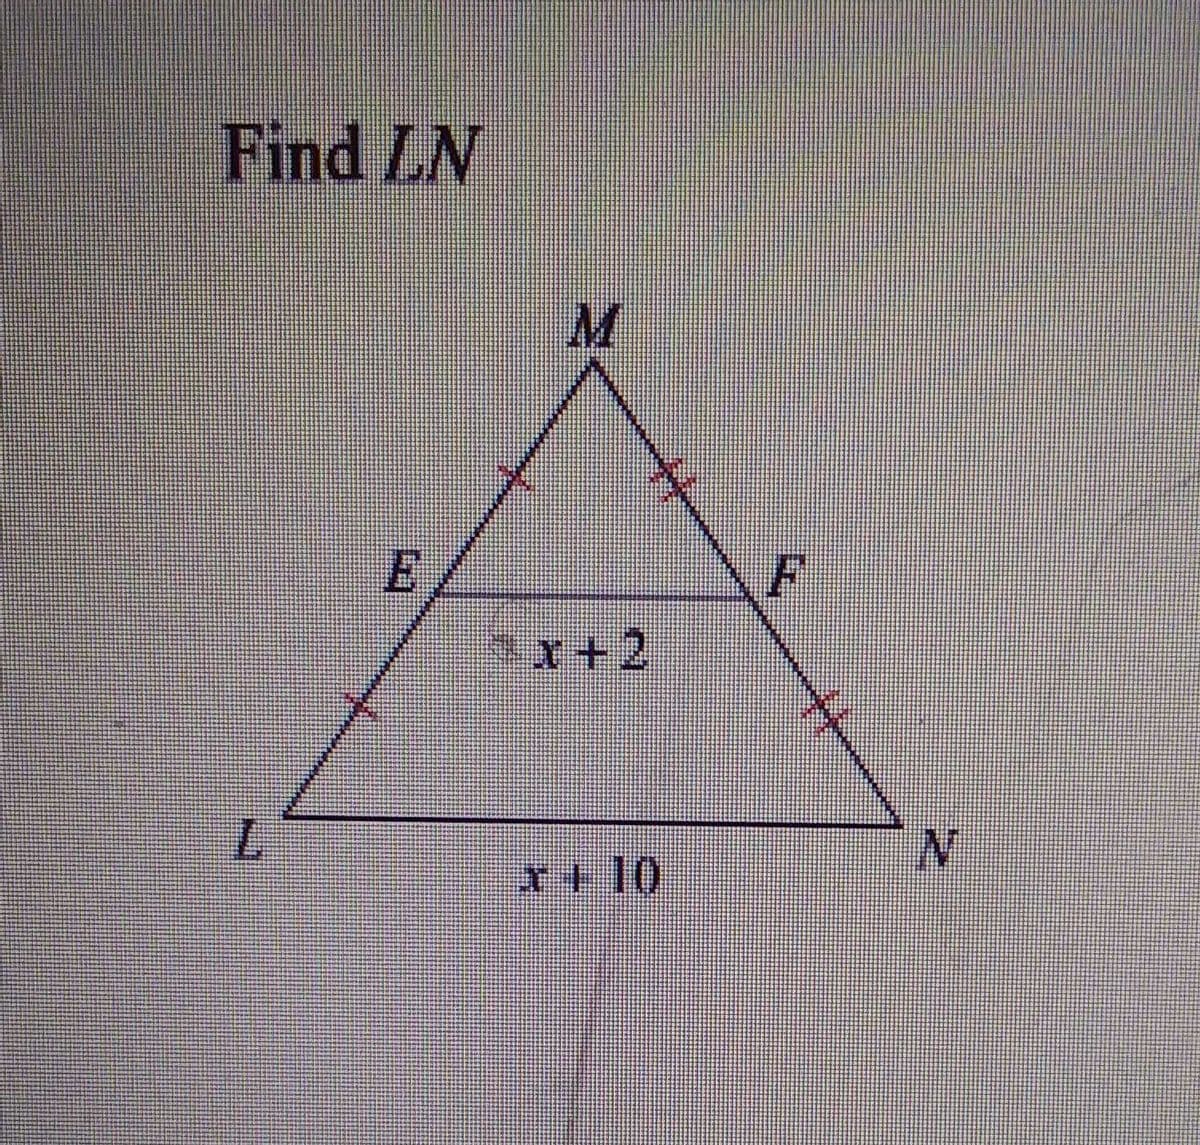 Find LN
M
Sx+2
*+10
